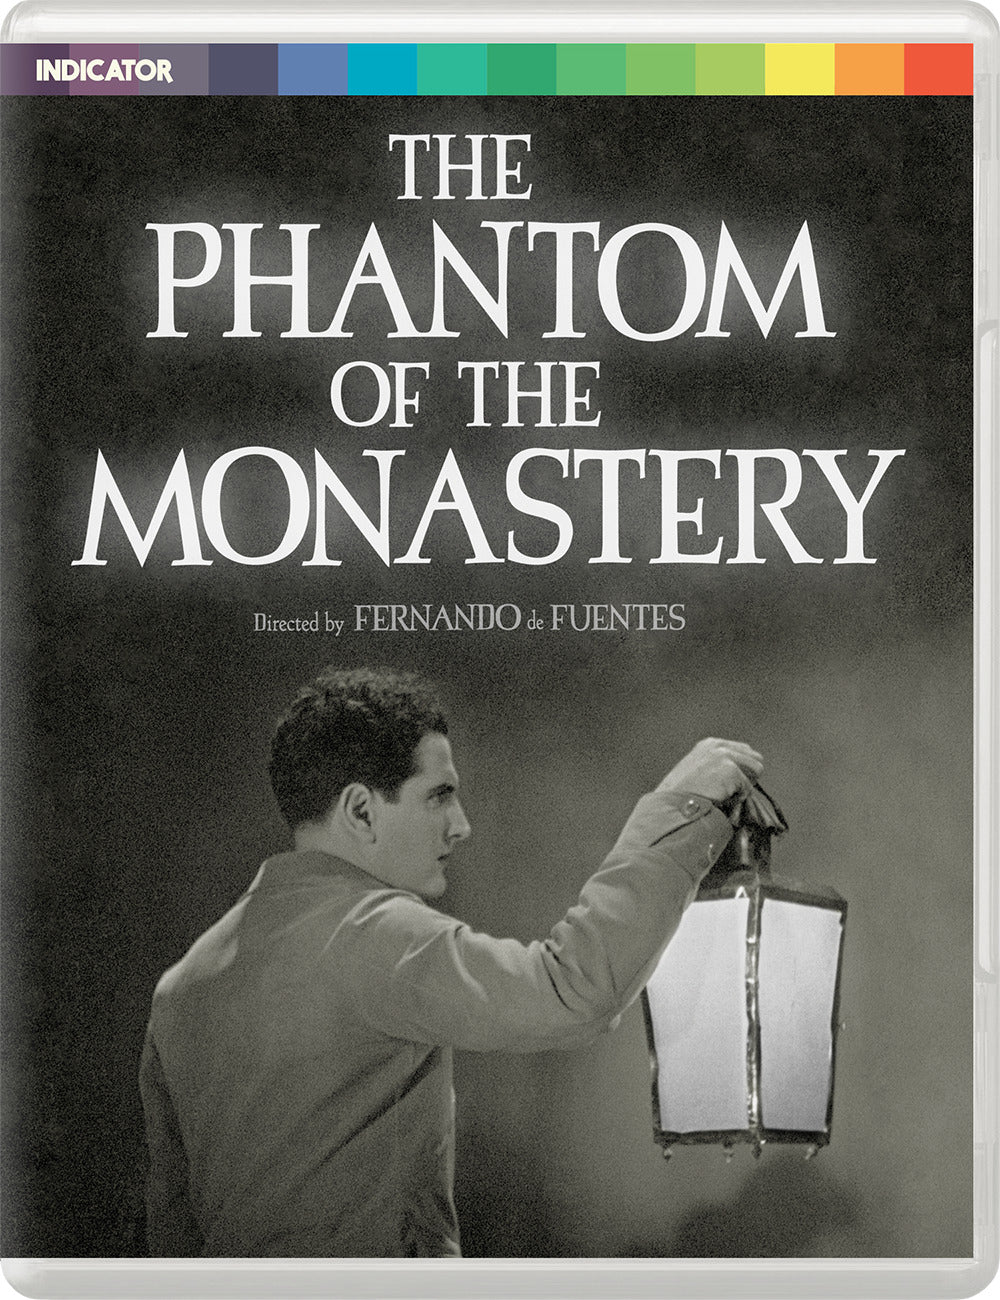 The Phantom of the Monastery (1934) de Fernando de Fuentes - front cover